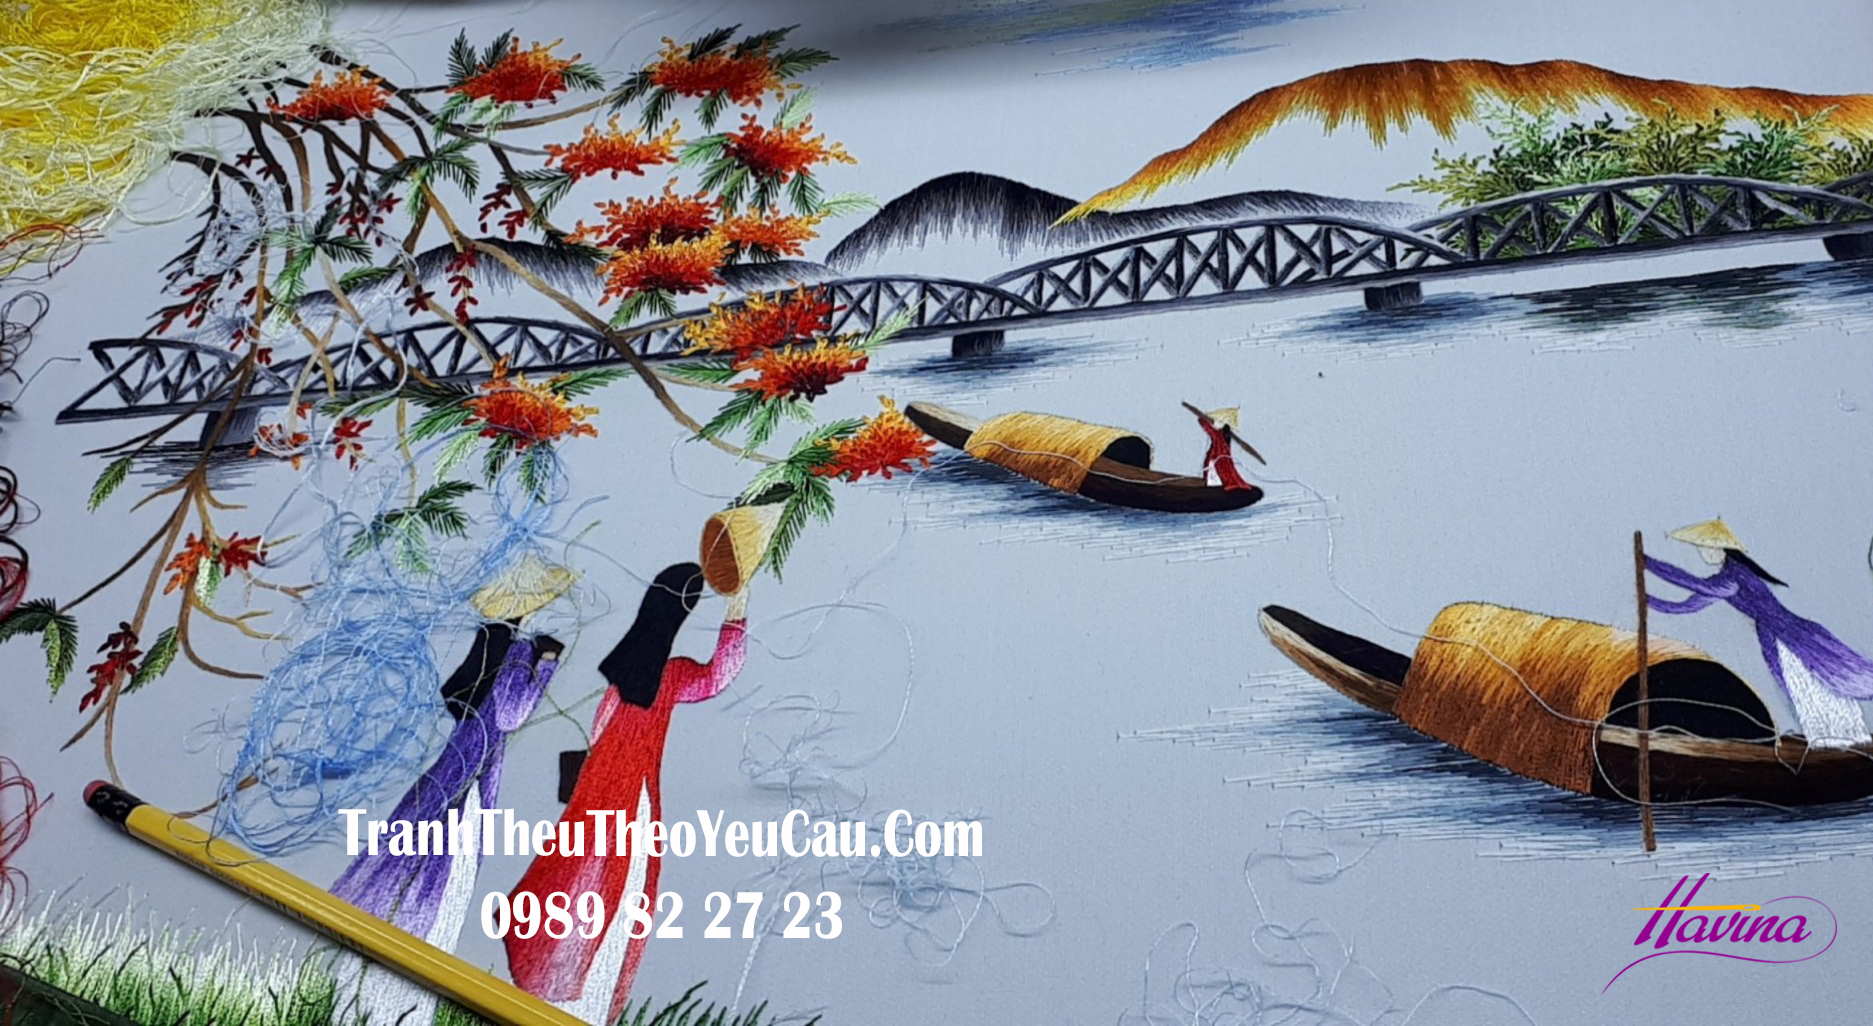 Tranh thêu Huế chuyên về cảnh Huế: cầu Tràng Tiền, chùa Linh Mụ...